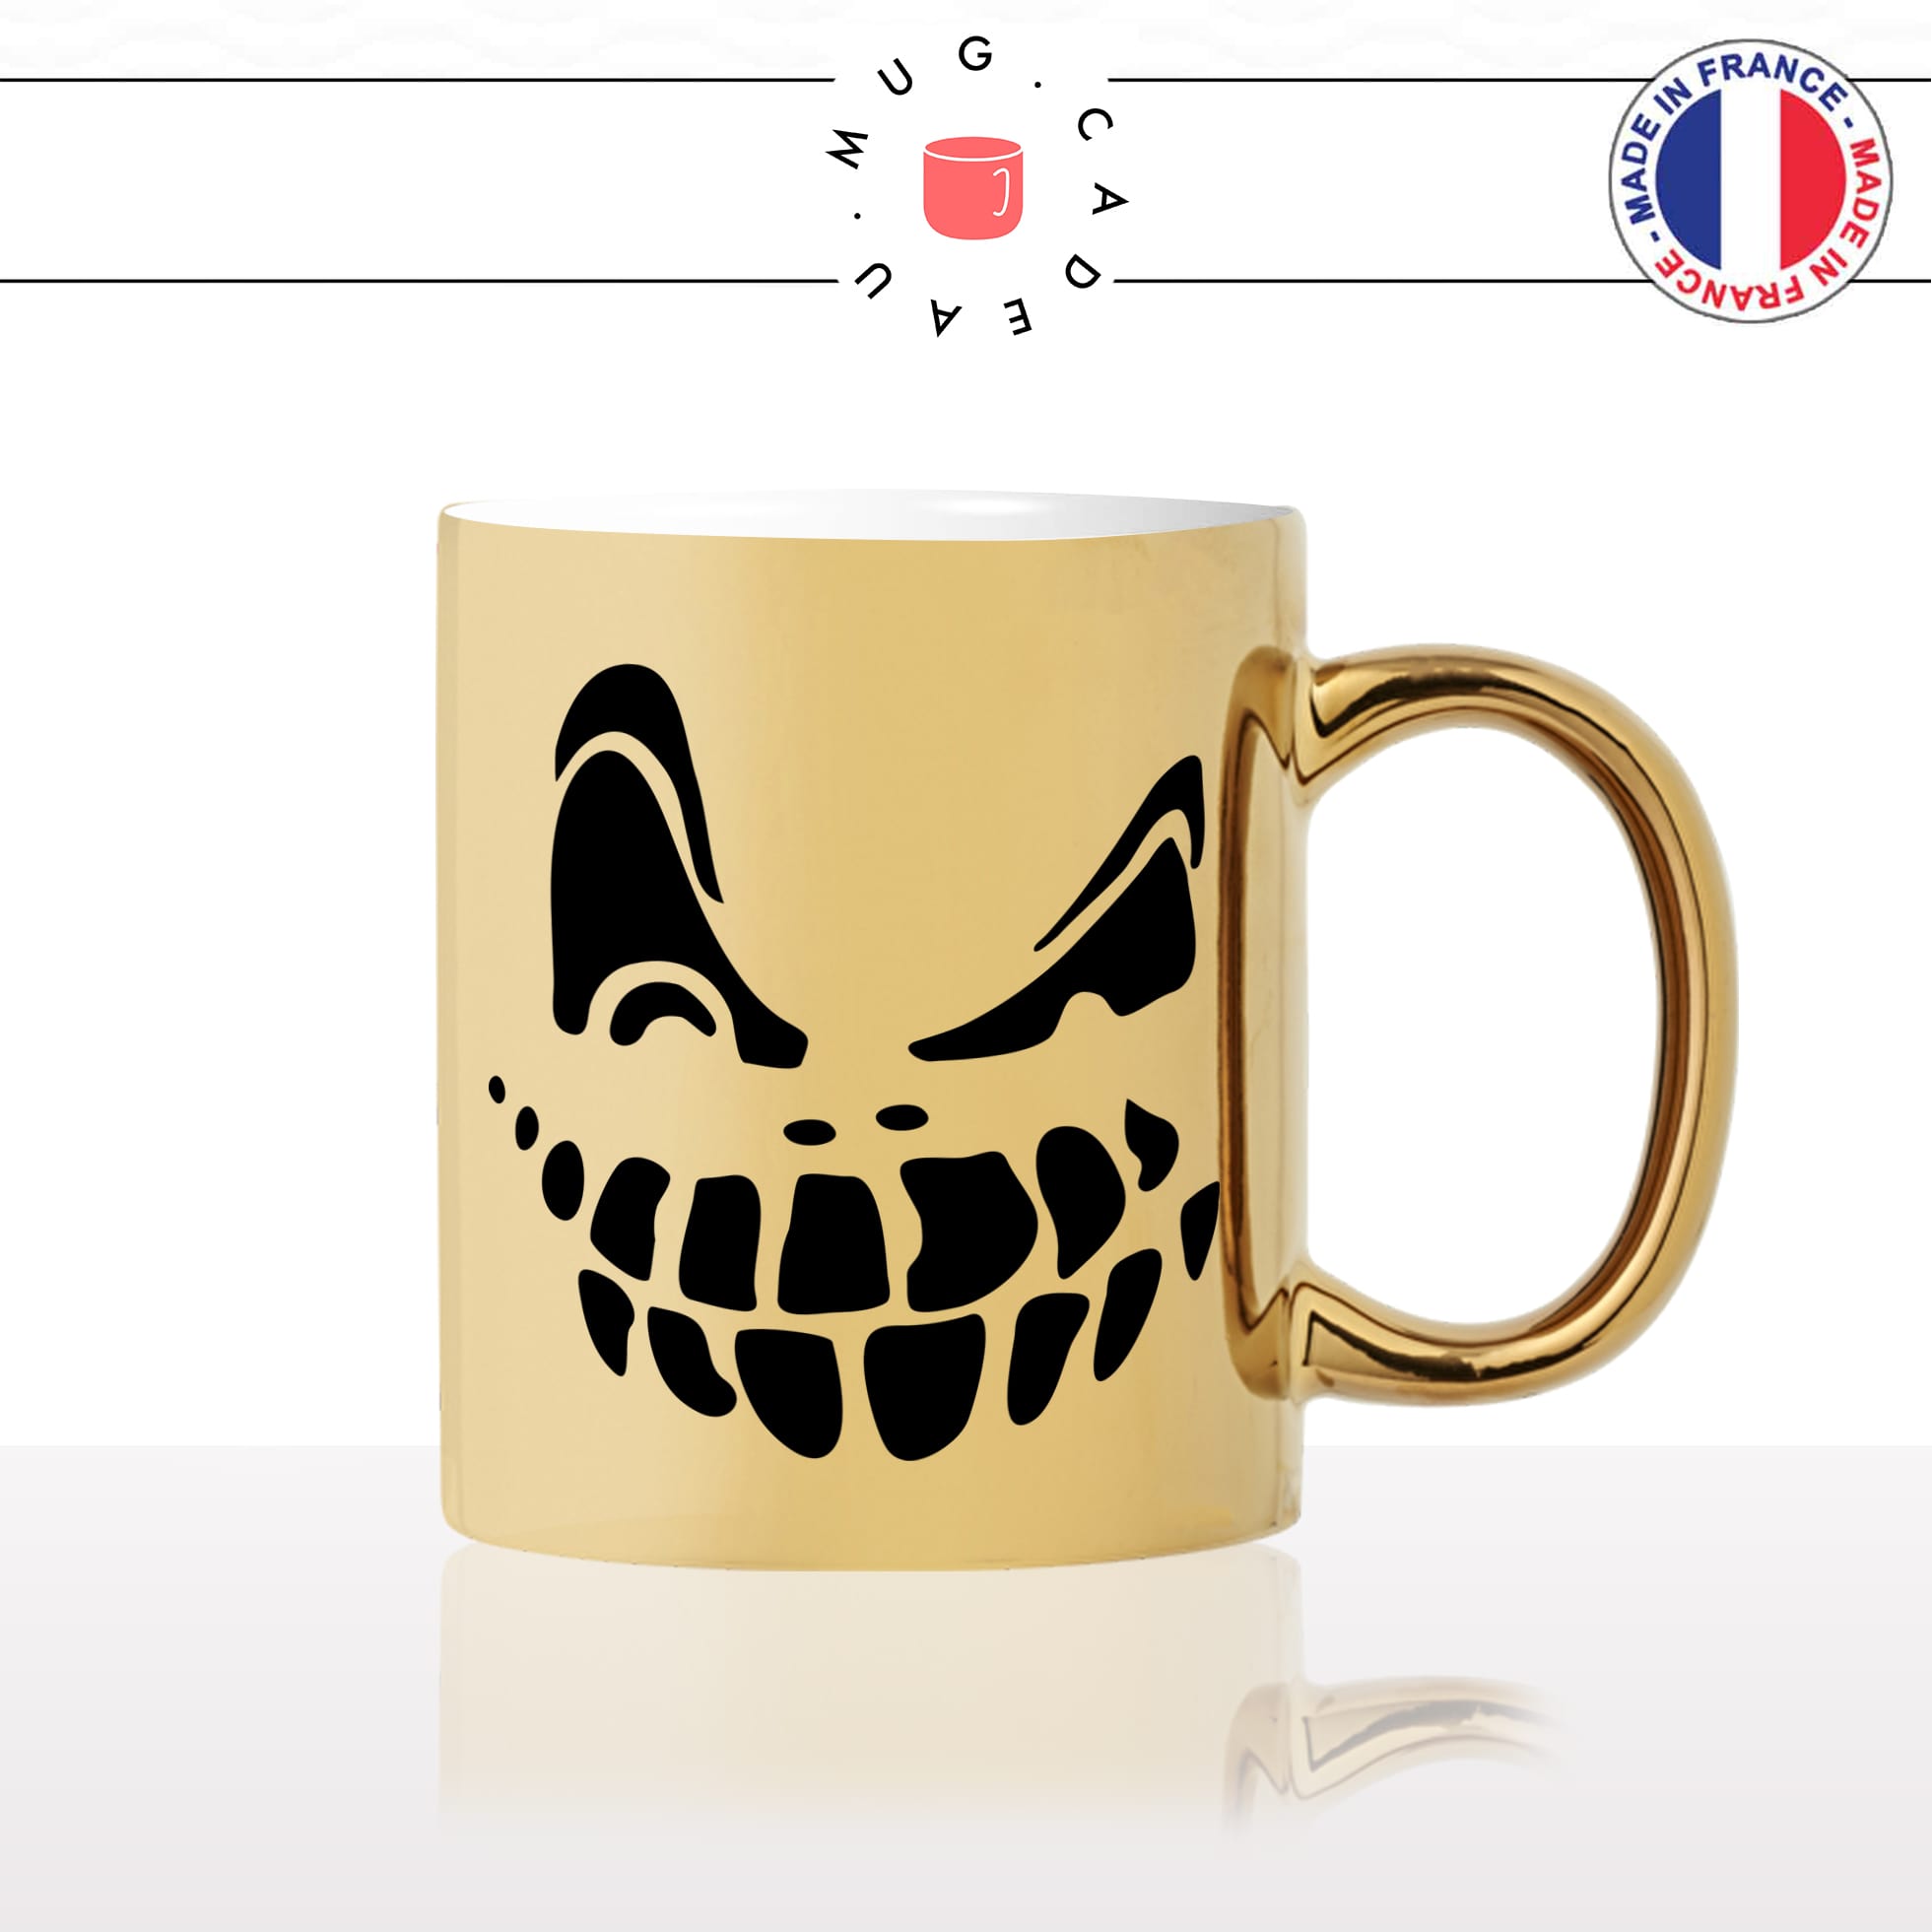 mug-tasse-gold-or-doré-halloween-monstre-cool-peur-moche-main-os-mort-vivant-zombie-original-fun-idée-cadeau-personnalisé-café-thé2-min